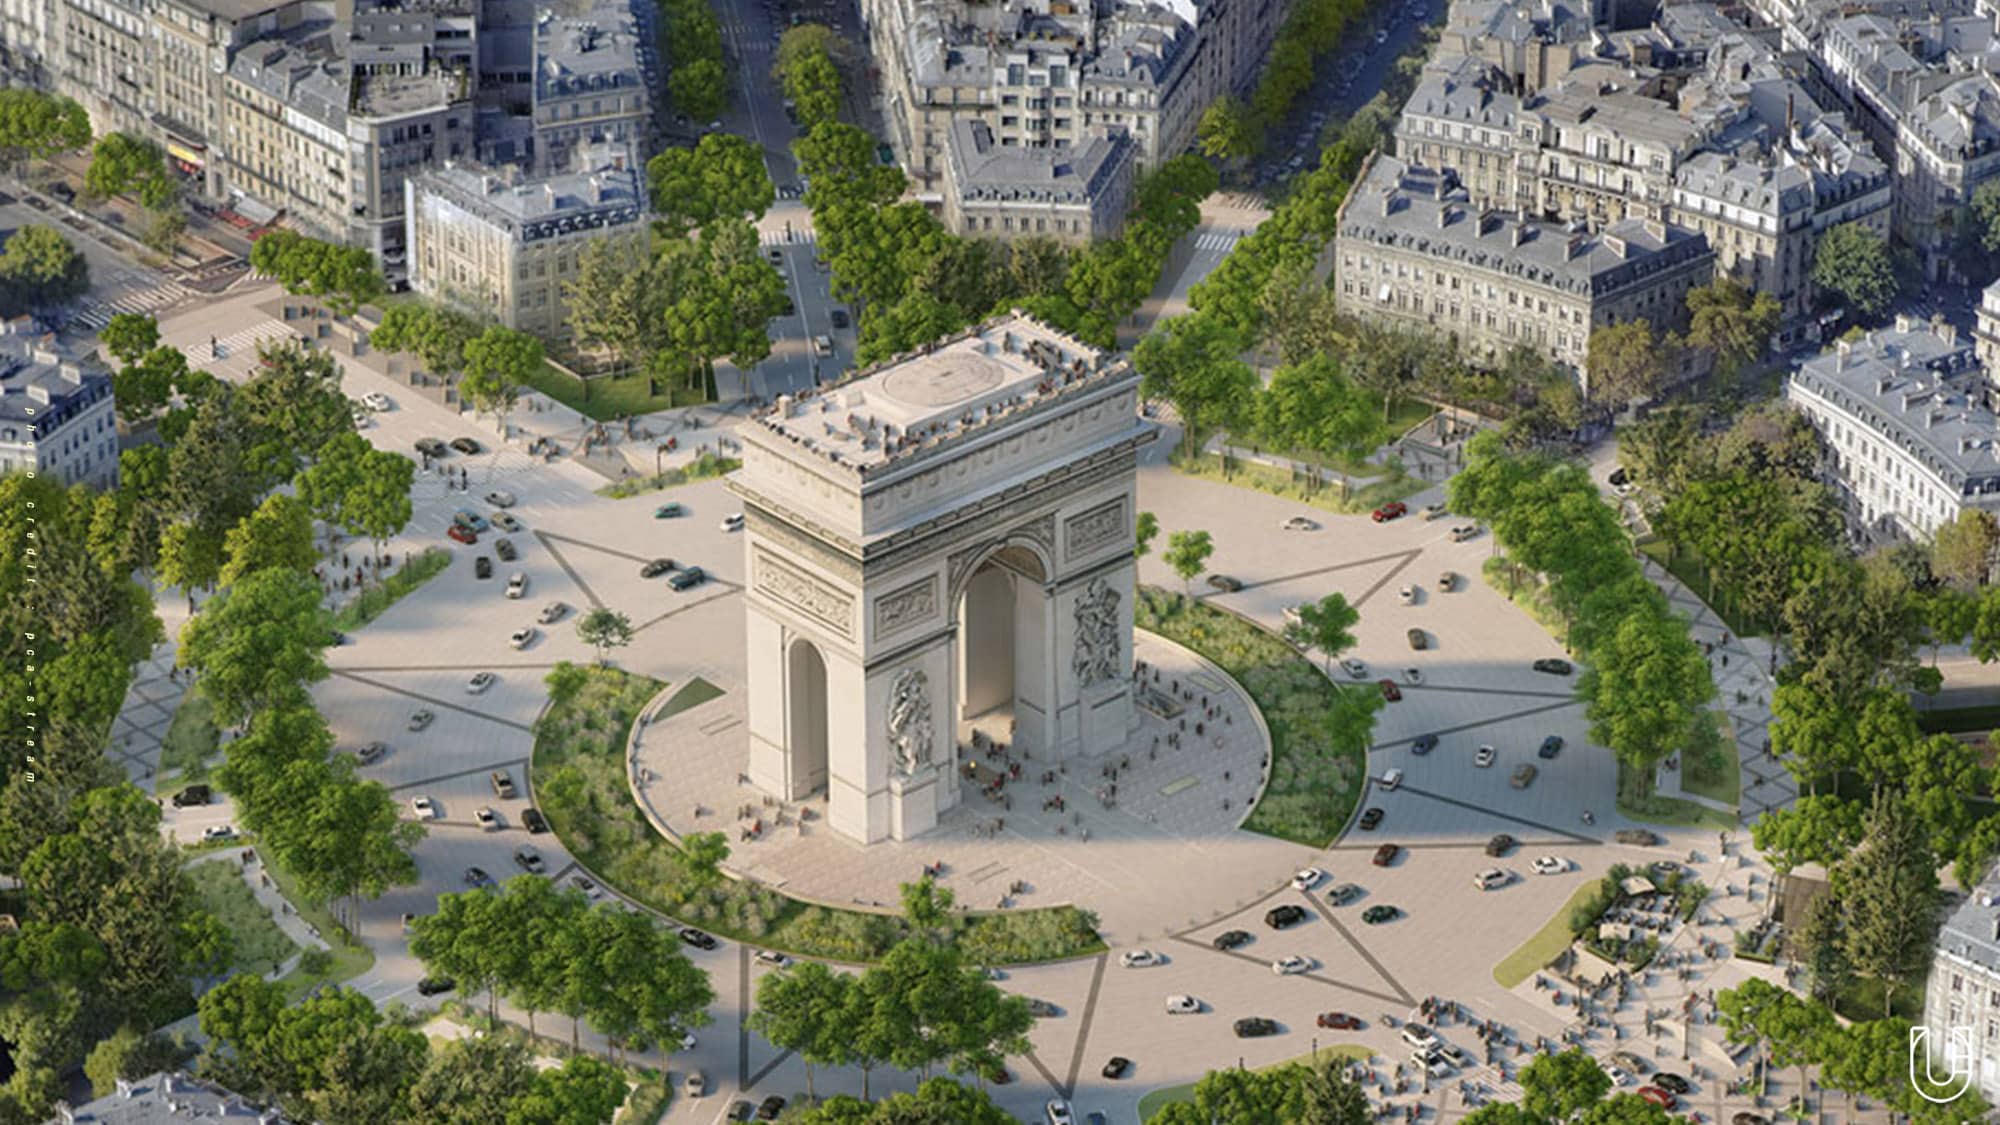 ปารีสปรับปรุง 'ฌ็องเซลิเซ่' ถนนดังในตำนานให้เป็นพื้นที่สาธารณะ - Urban Creature